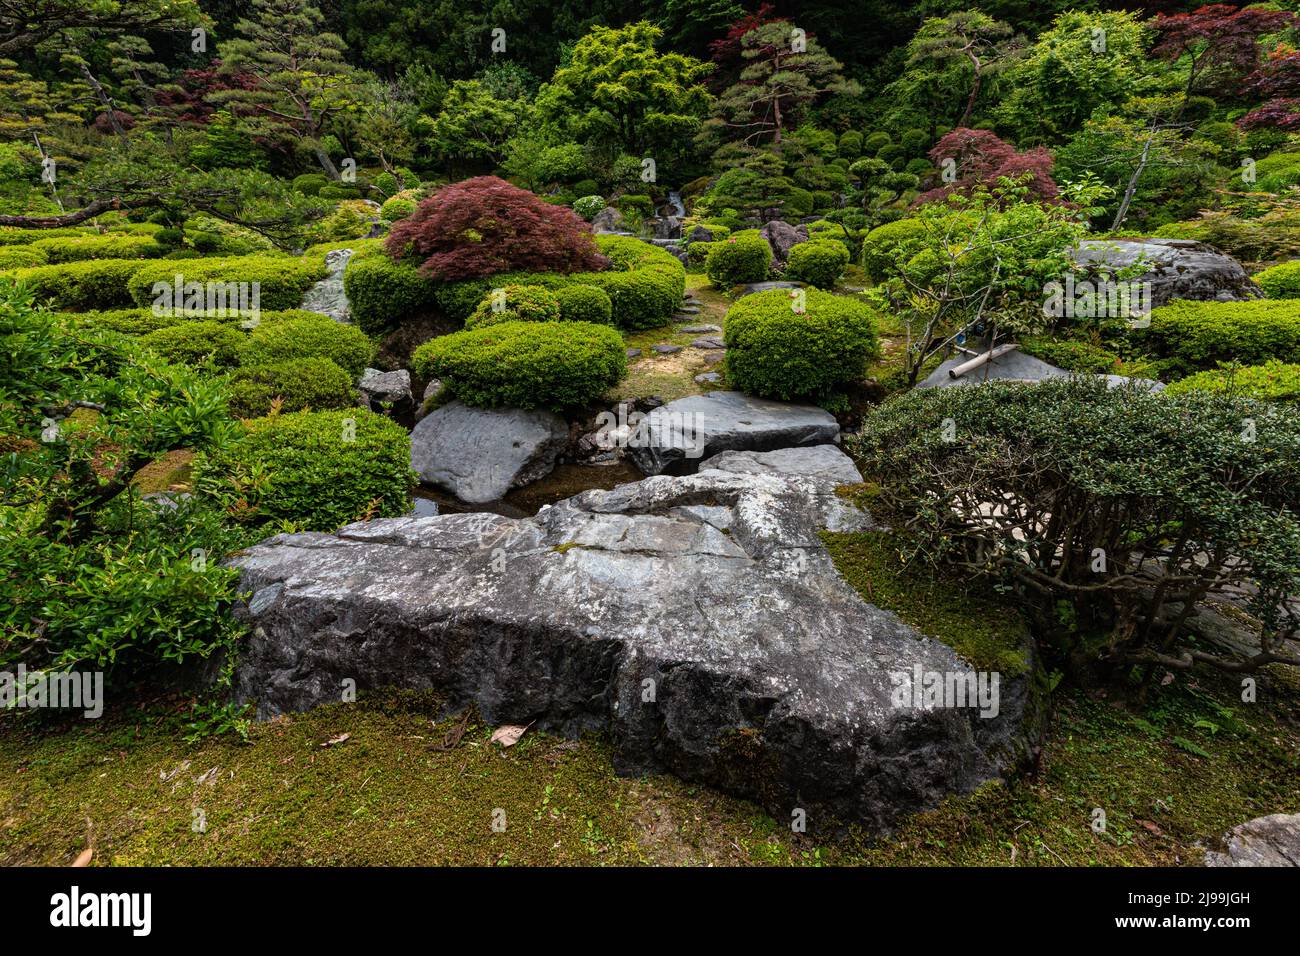 Hisuien Jade Garden - Un masso di 70 tonnellate di giada di cobalto vi saluta quando entrate nel cancello di questo giardino giapponese splendidamente paesaggistico. L'area del sito Foto Stock